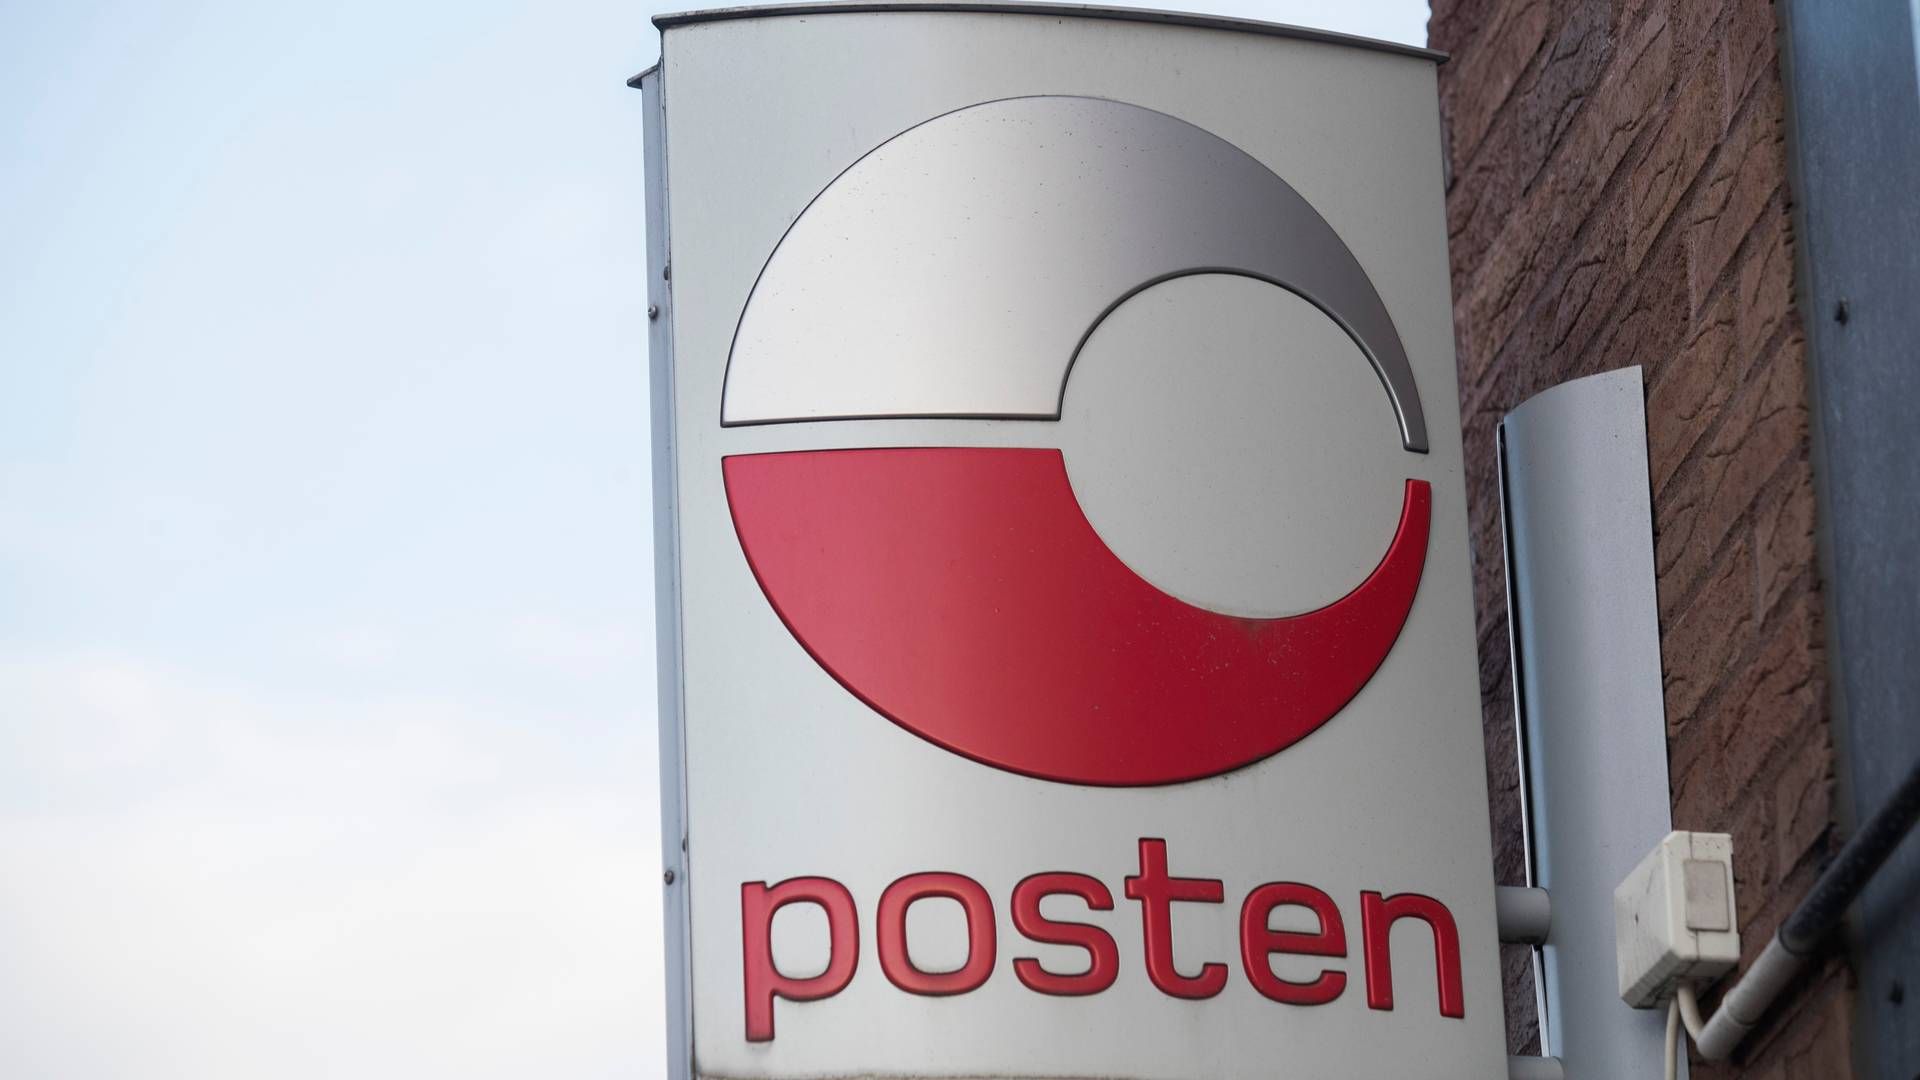 SLUTTER: Posten slutter å markedsføre seg i sosiale medier etter gjentatte svindelforsøk. | Foto: Terje Bendiksby / NTB scanpix